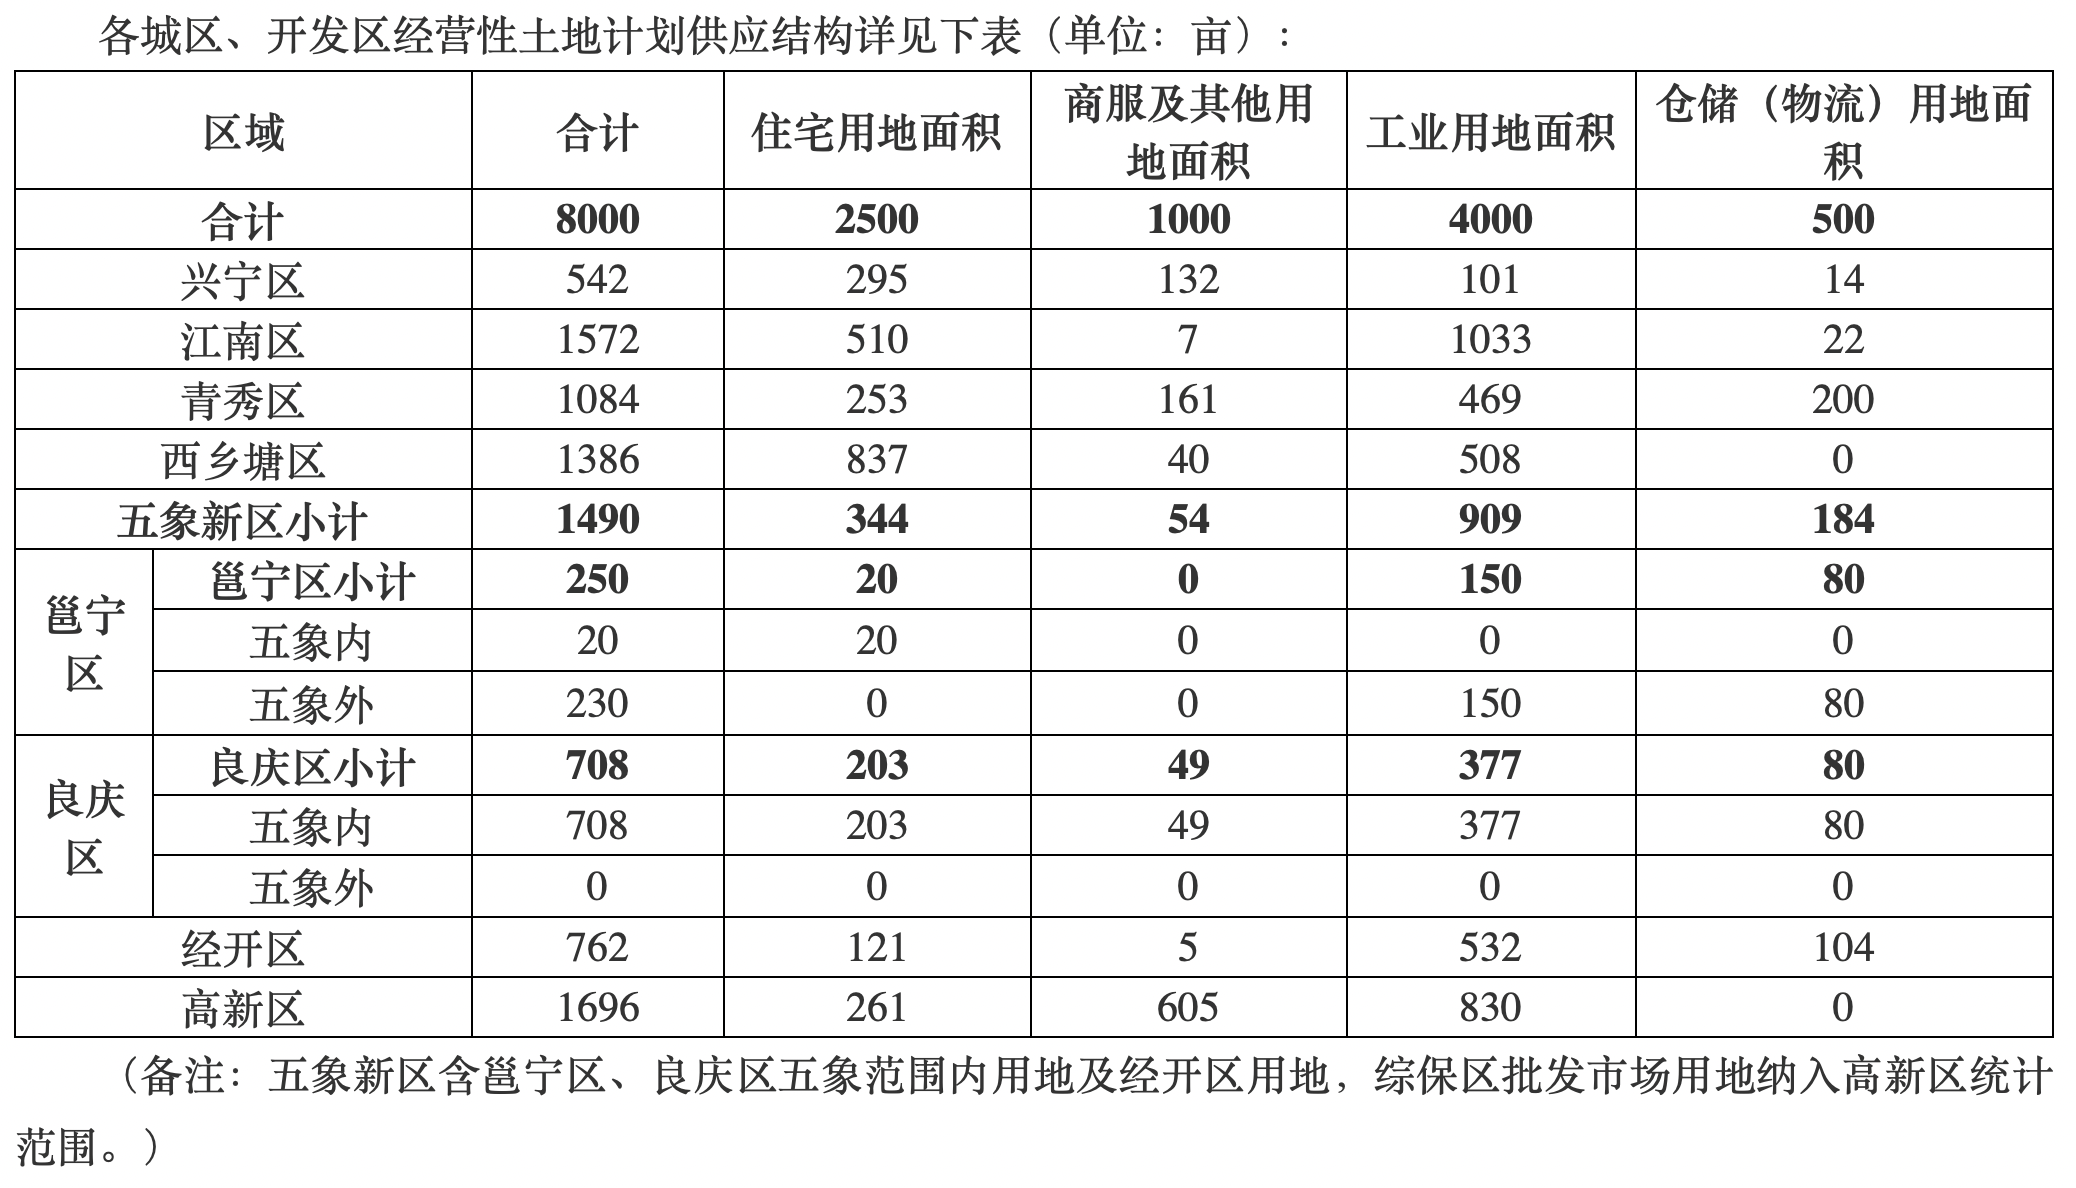 广西南宁：今年经营性用地计划供应8000亩，建设配售型保障性住房4000